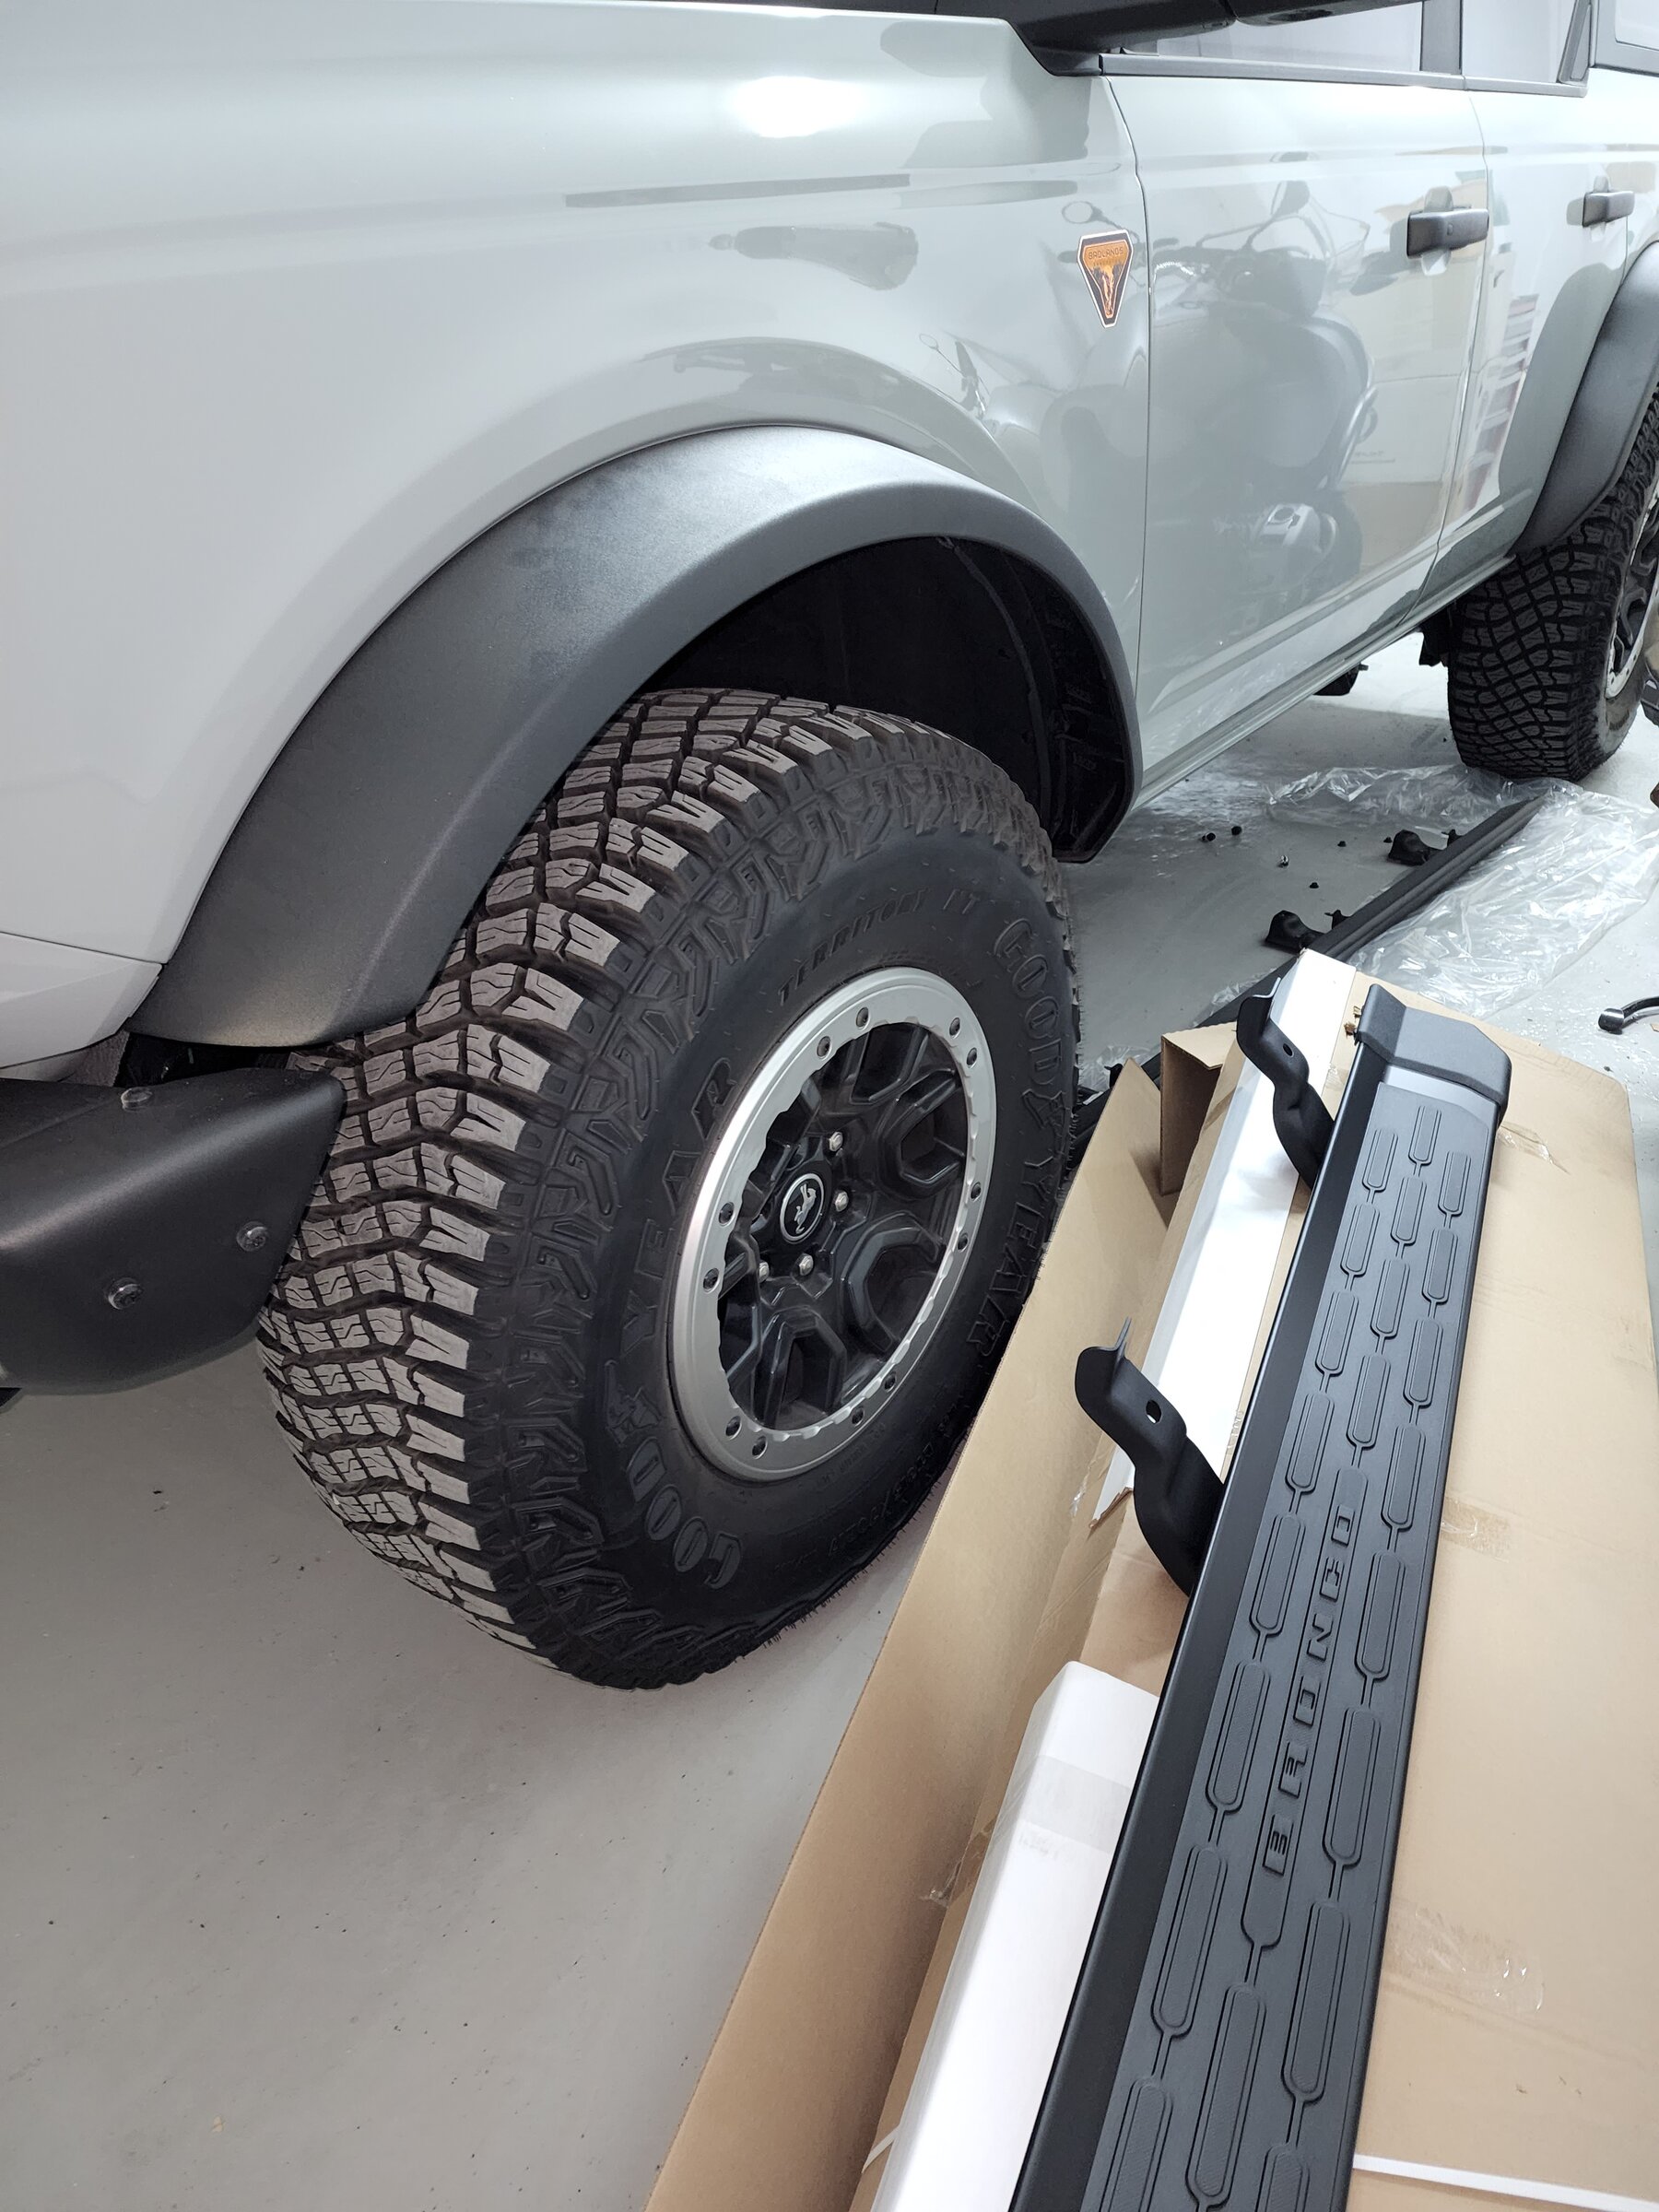 Ford Bronco Badlands rockrails removed, Ford side steps added 20220402_002733